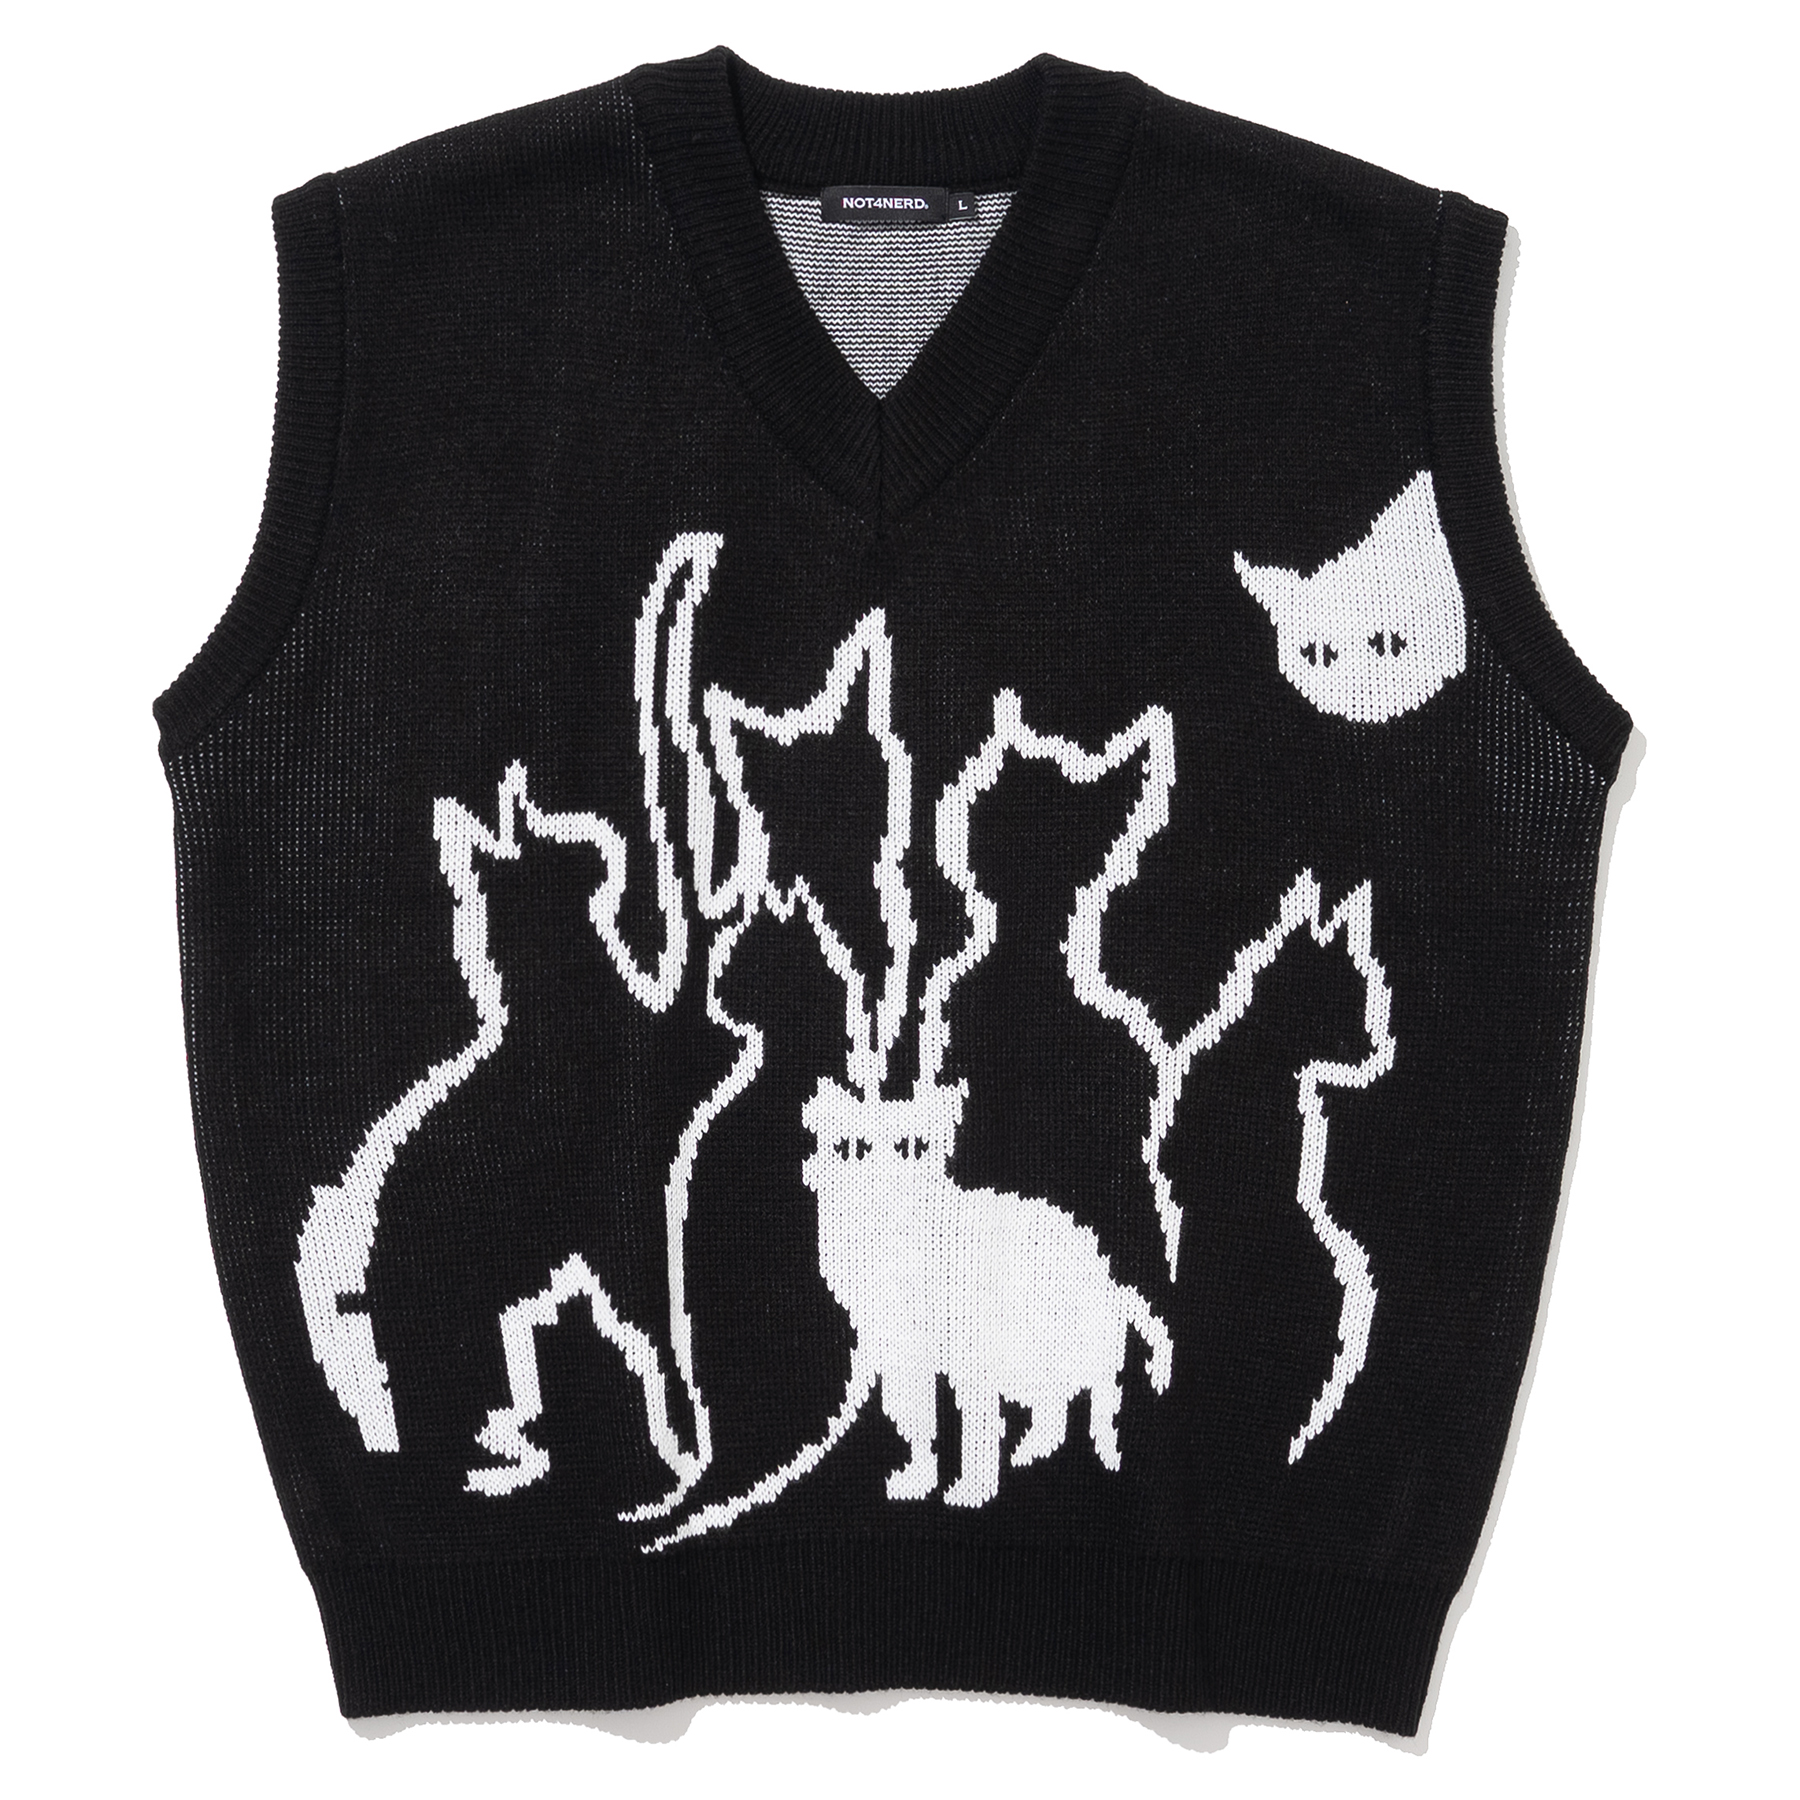 Kitten Knit Vest - Black,NOT4NERD